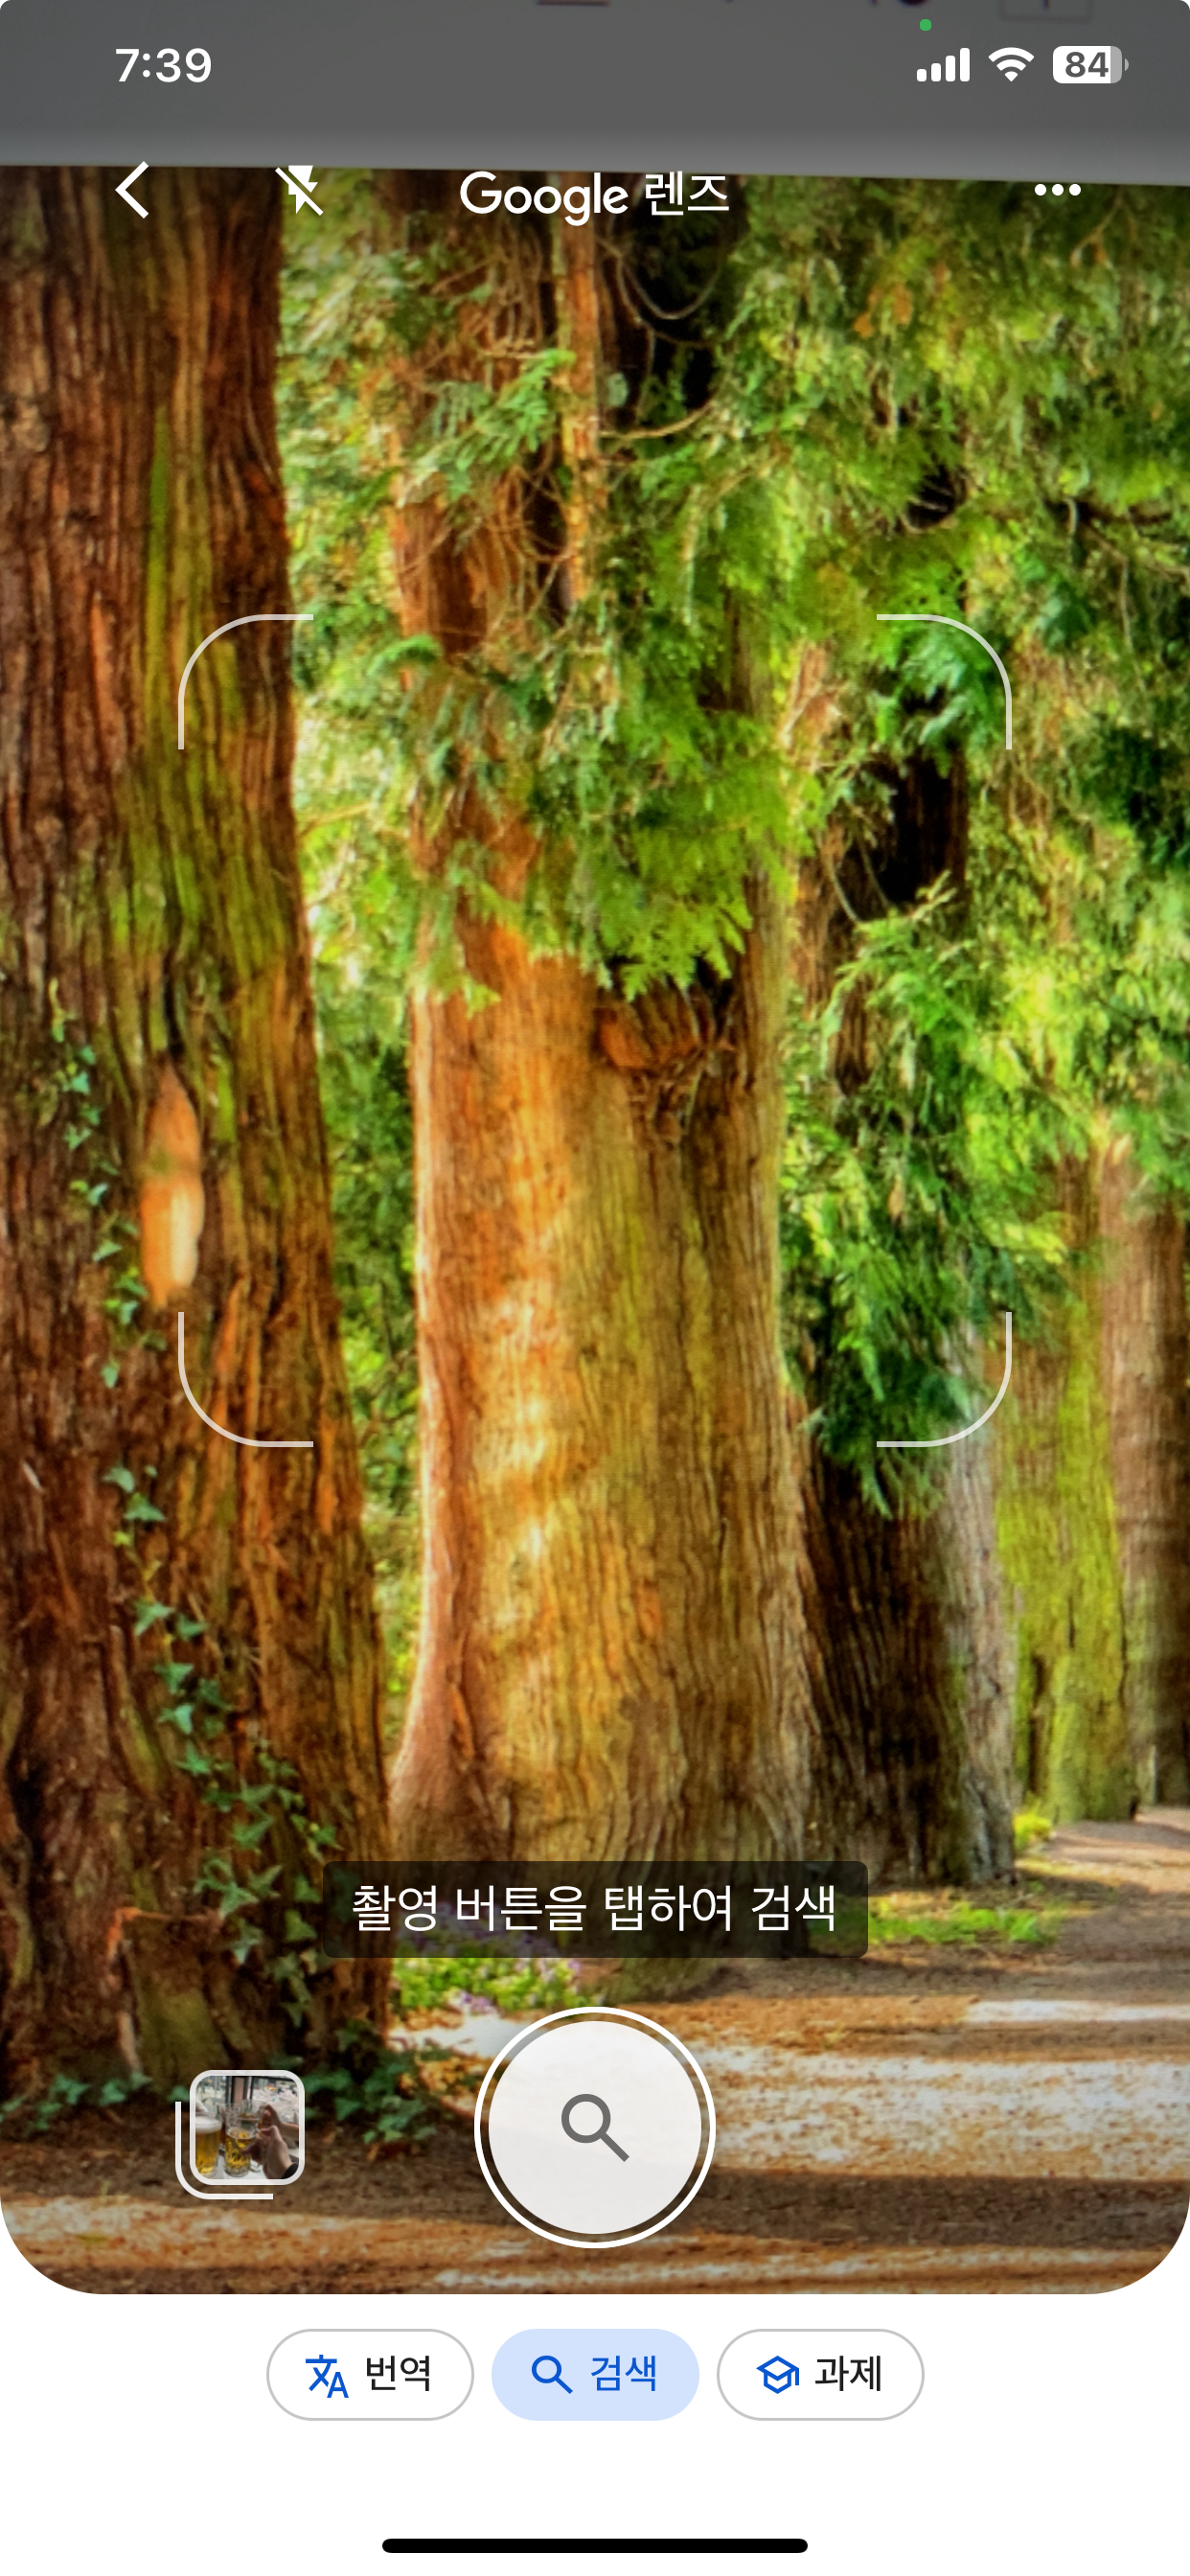 구글 앱의 렌즈 기능을 통해서 알고 싶은 나무 이름 촬영하기